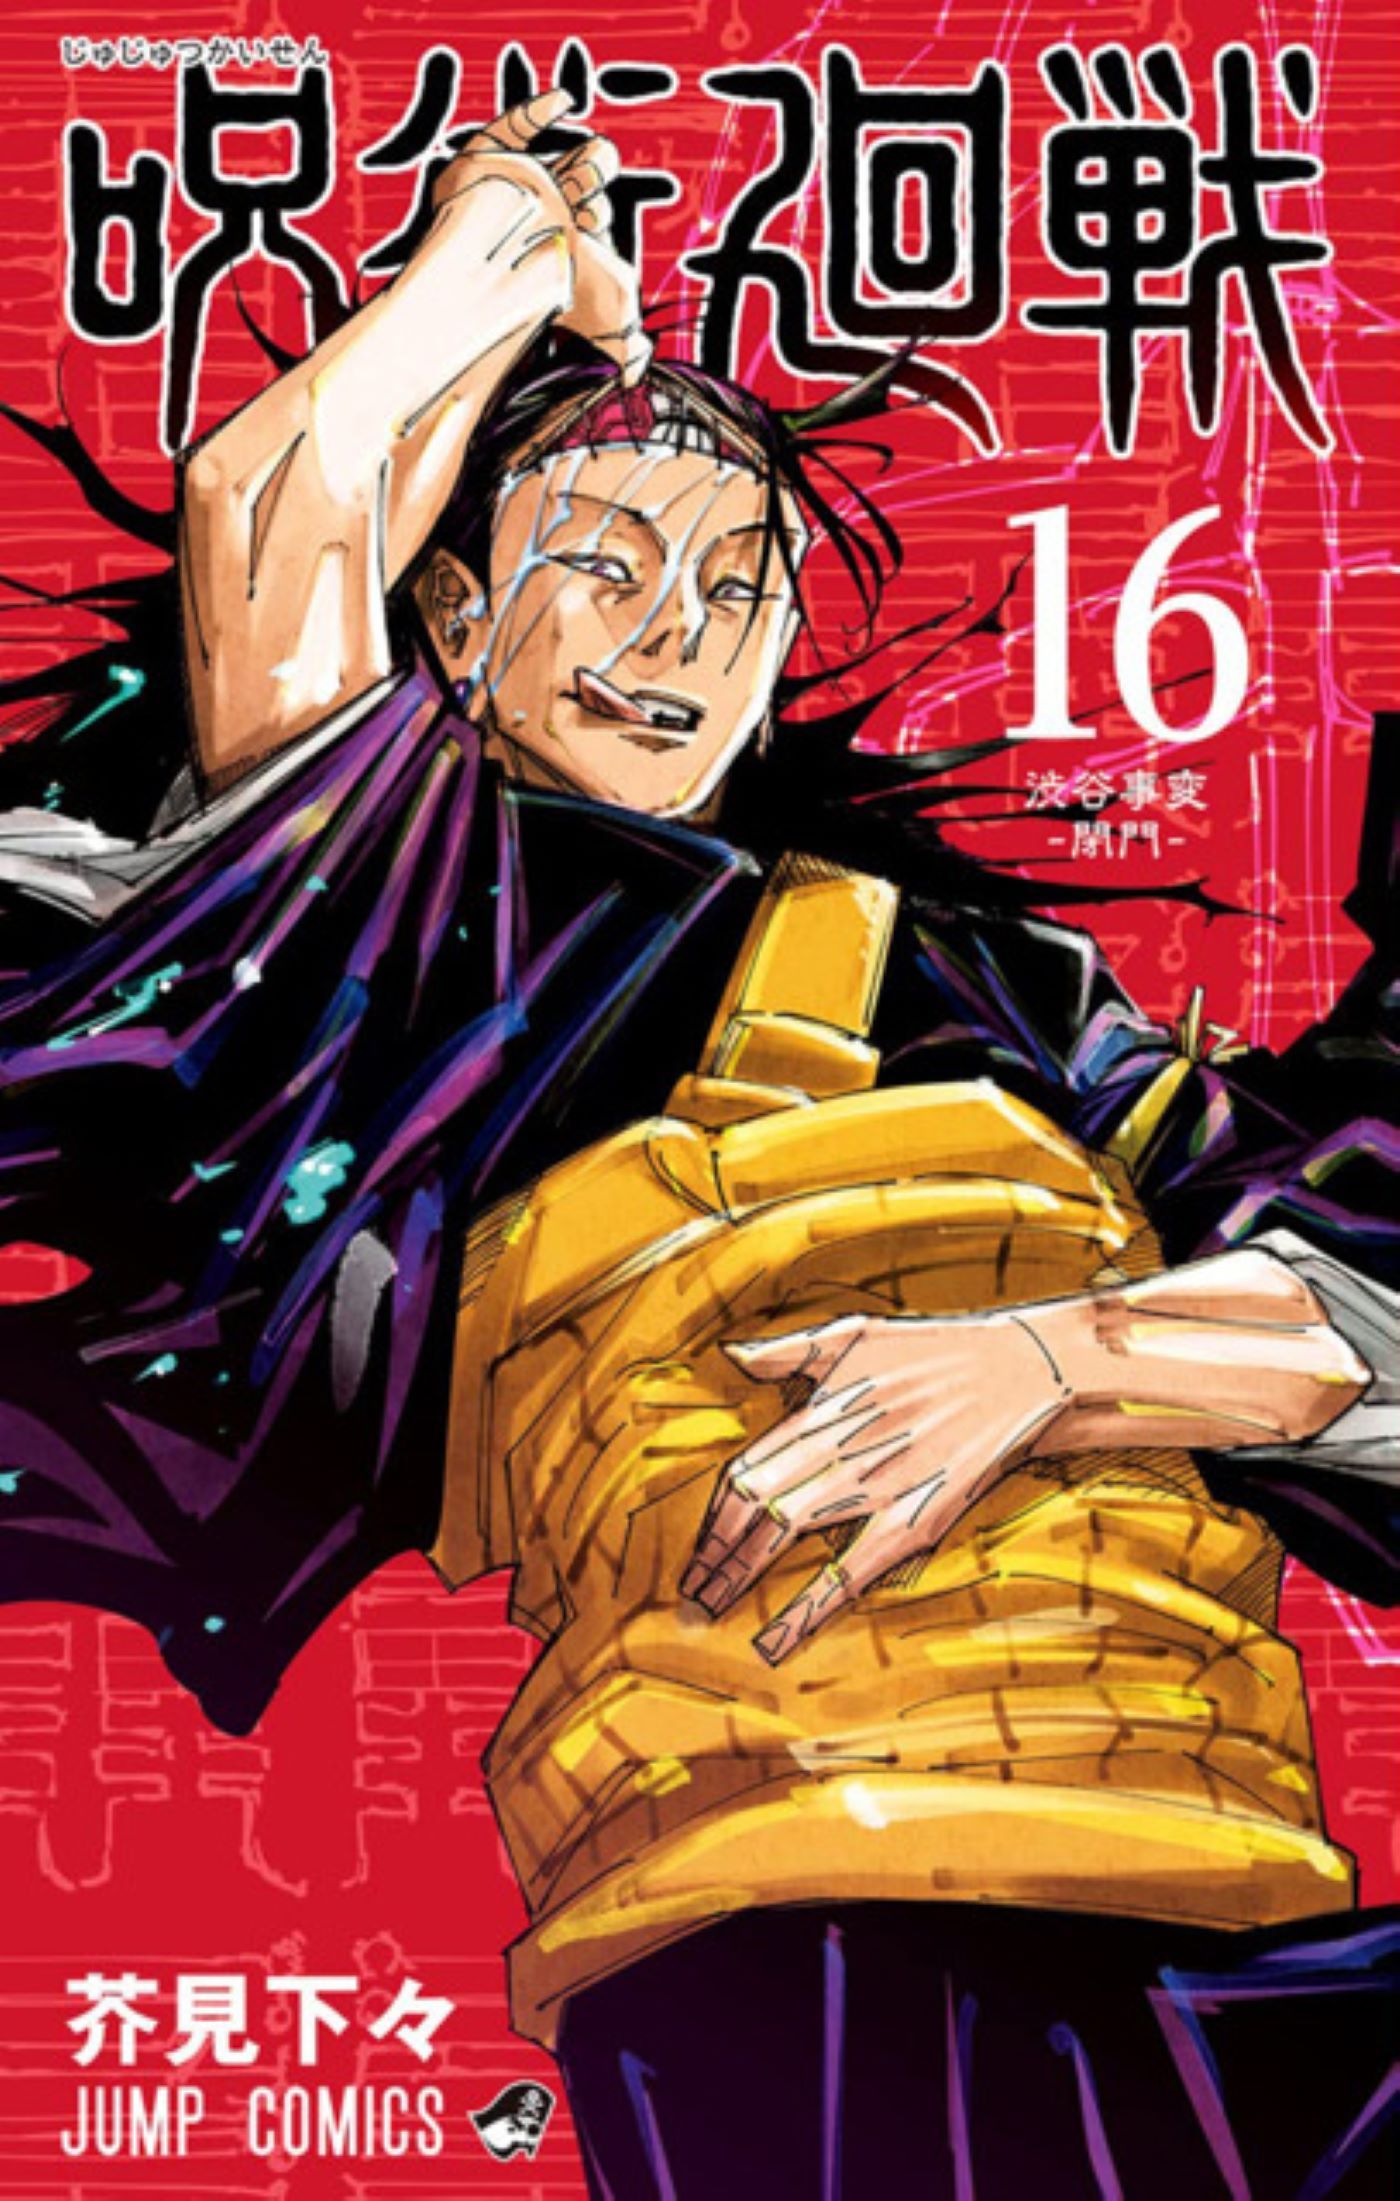 Capa Jujutsu #16 - Kenjaku mostrando a língua enquanto levanta o couro cabeludo dos pontos